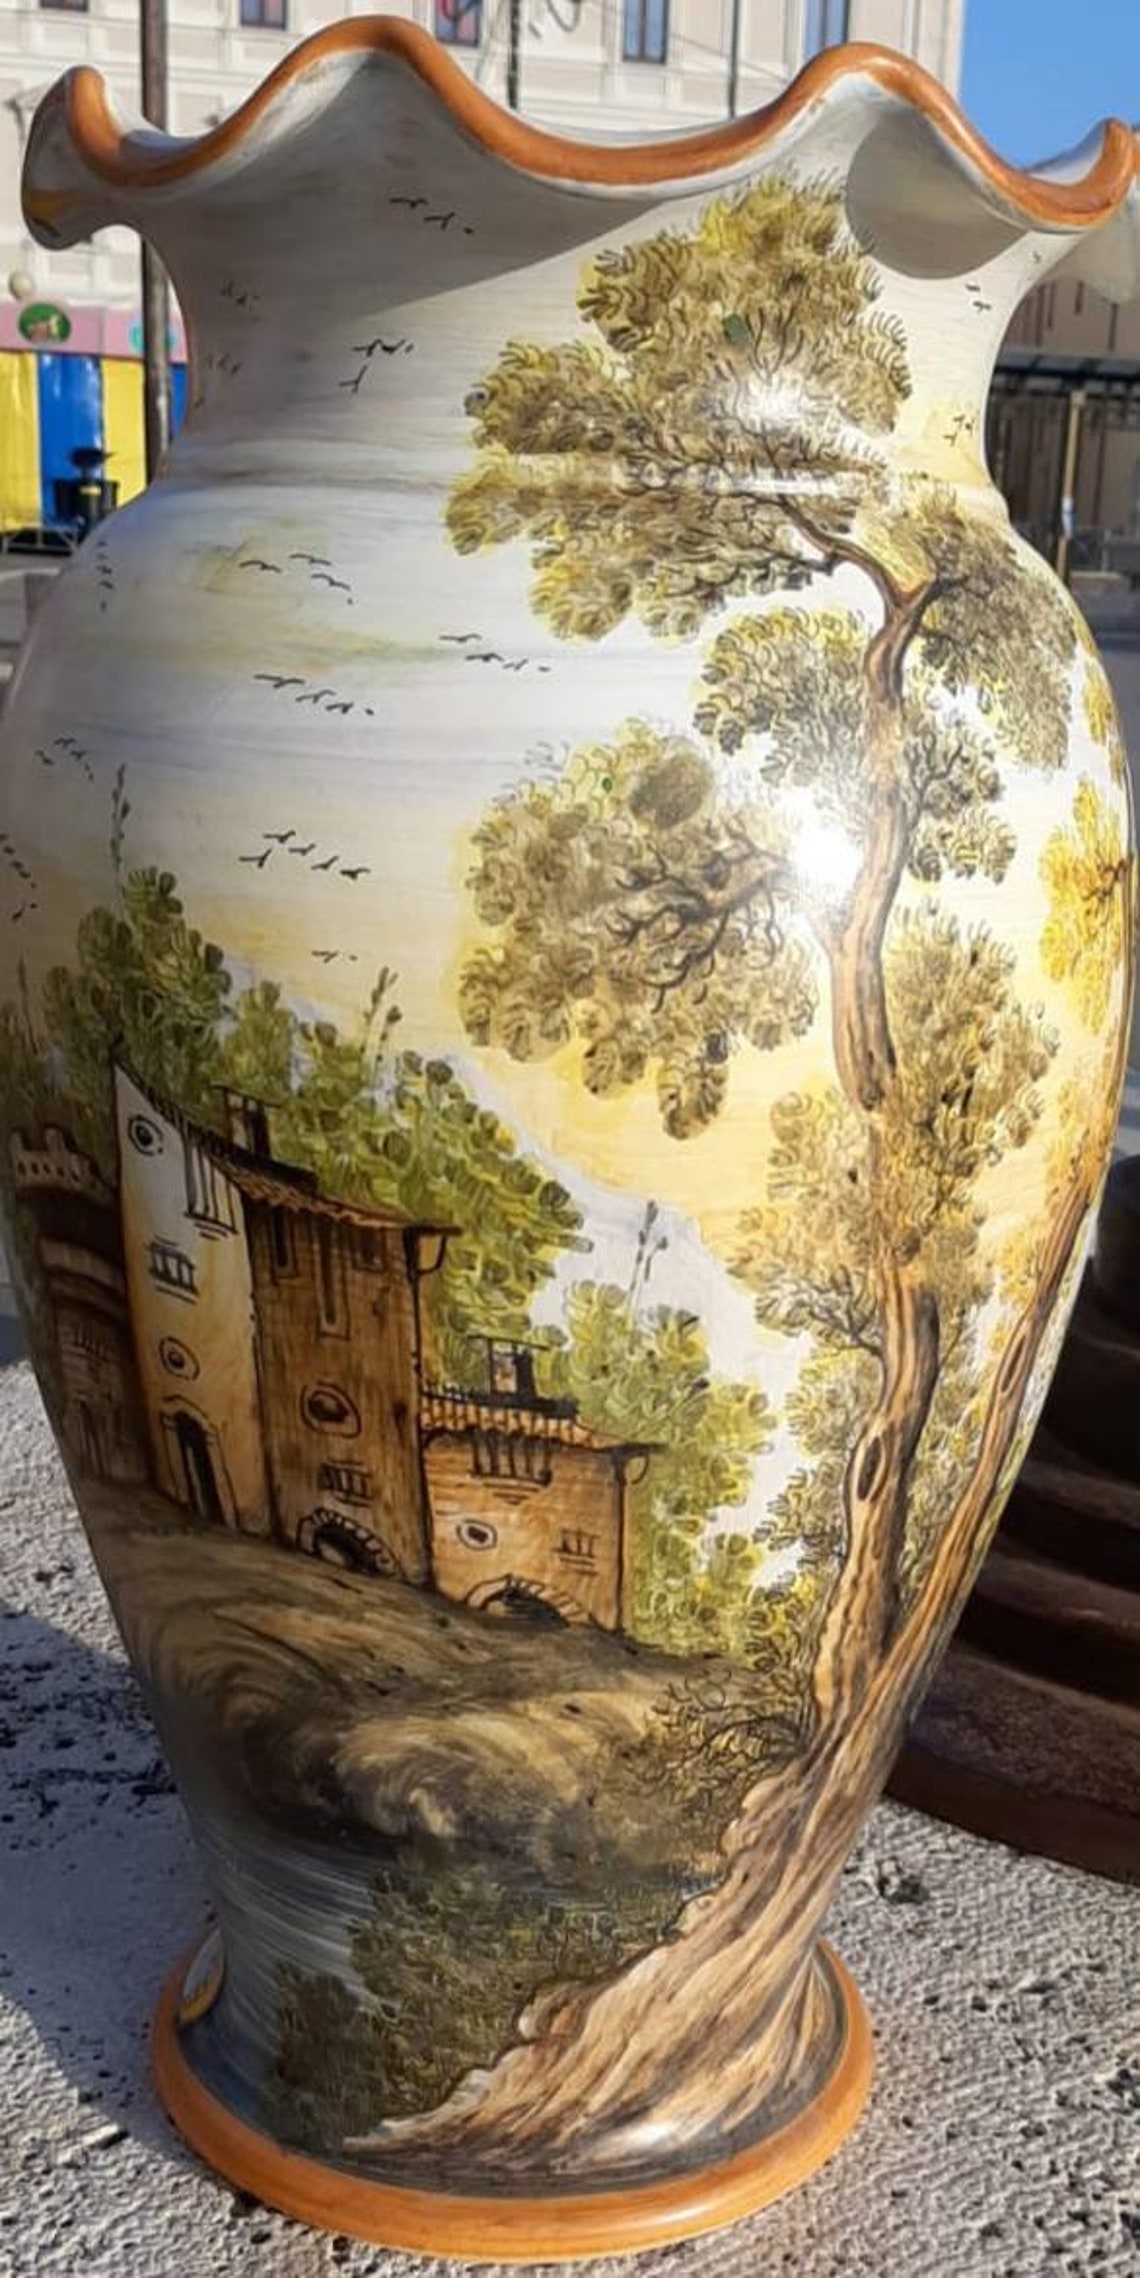 Vaso portaombrelli ceramica dipinto a mano artigianale - MR Magazzino -  Santa Vittoria d'Alba (CN)